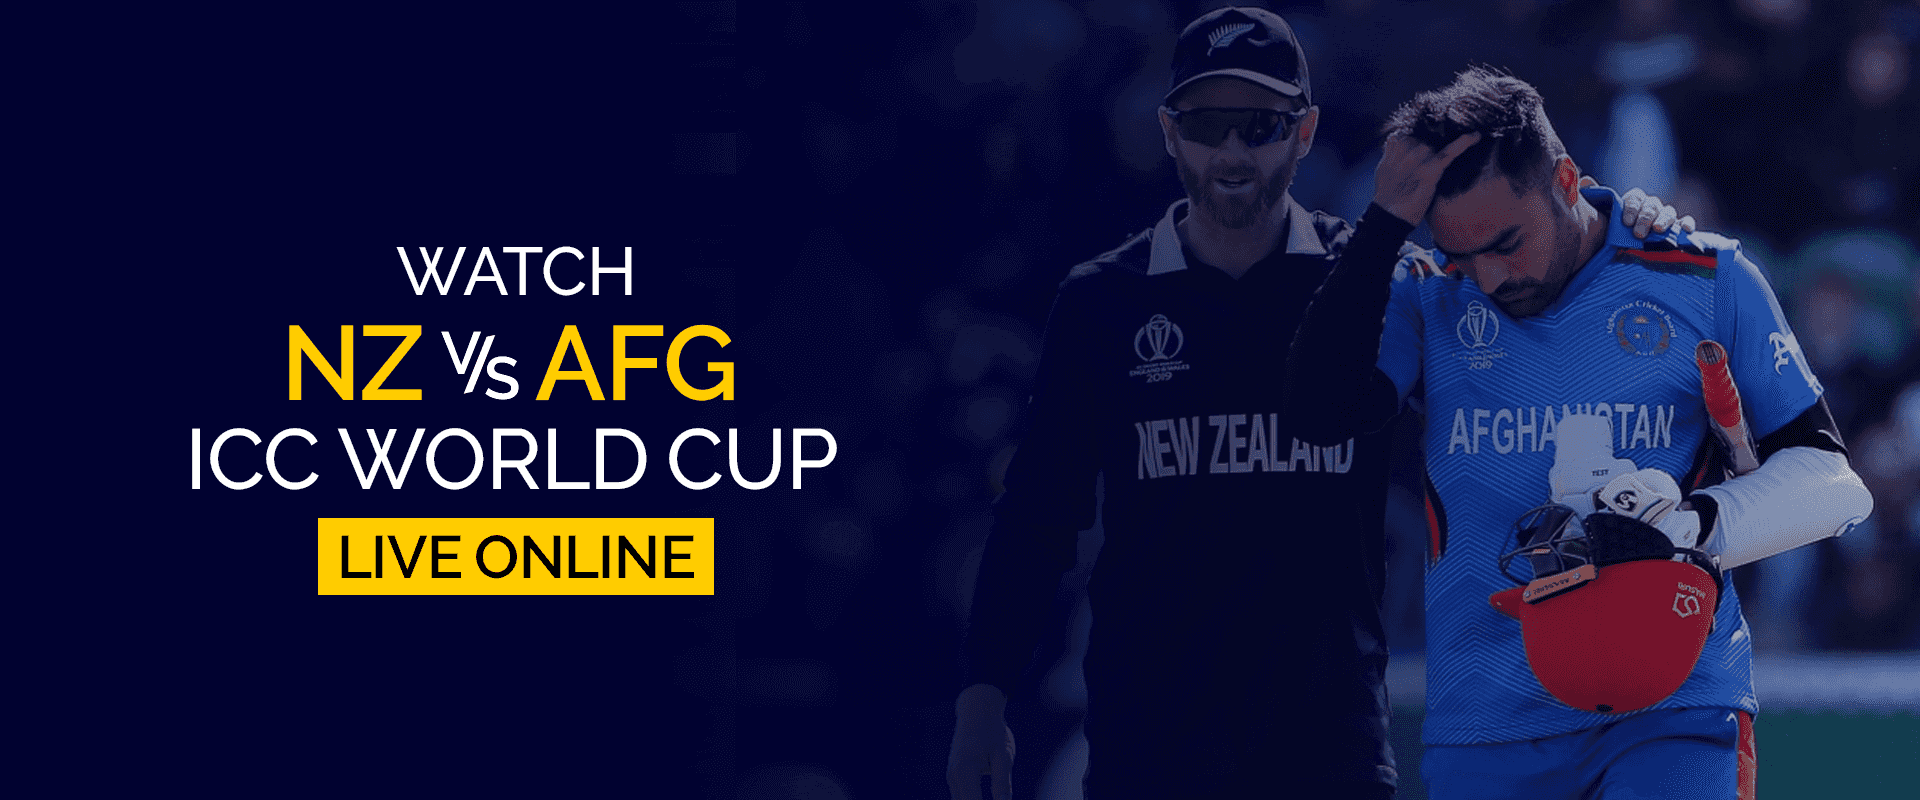 Regardez la Coupe du monde ICC Nouvelle-Zélande contre Afghanistan en direct en ligne